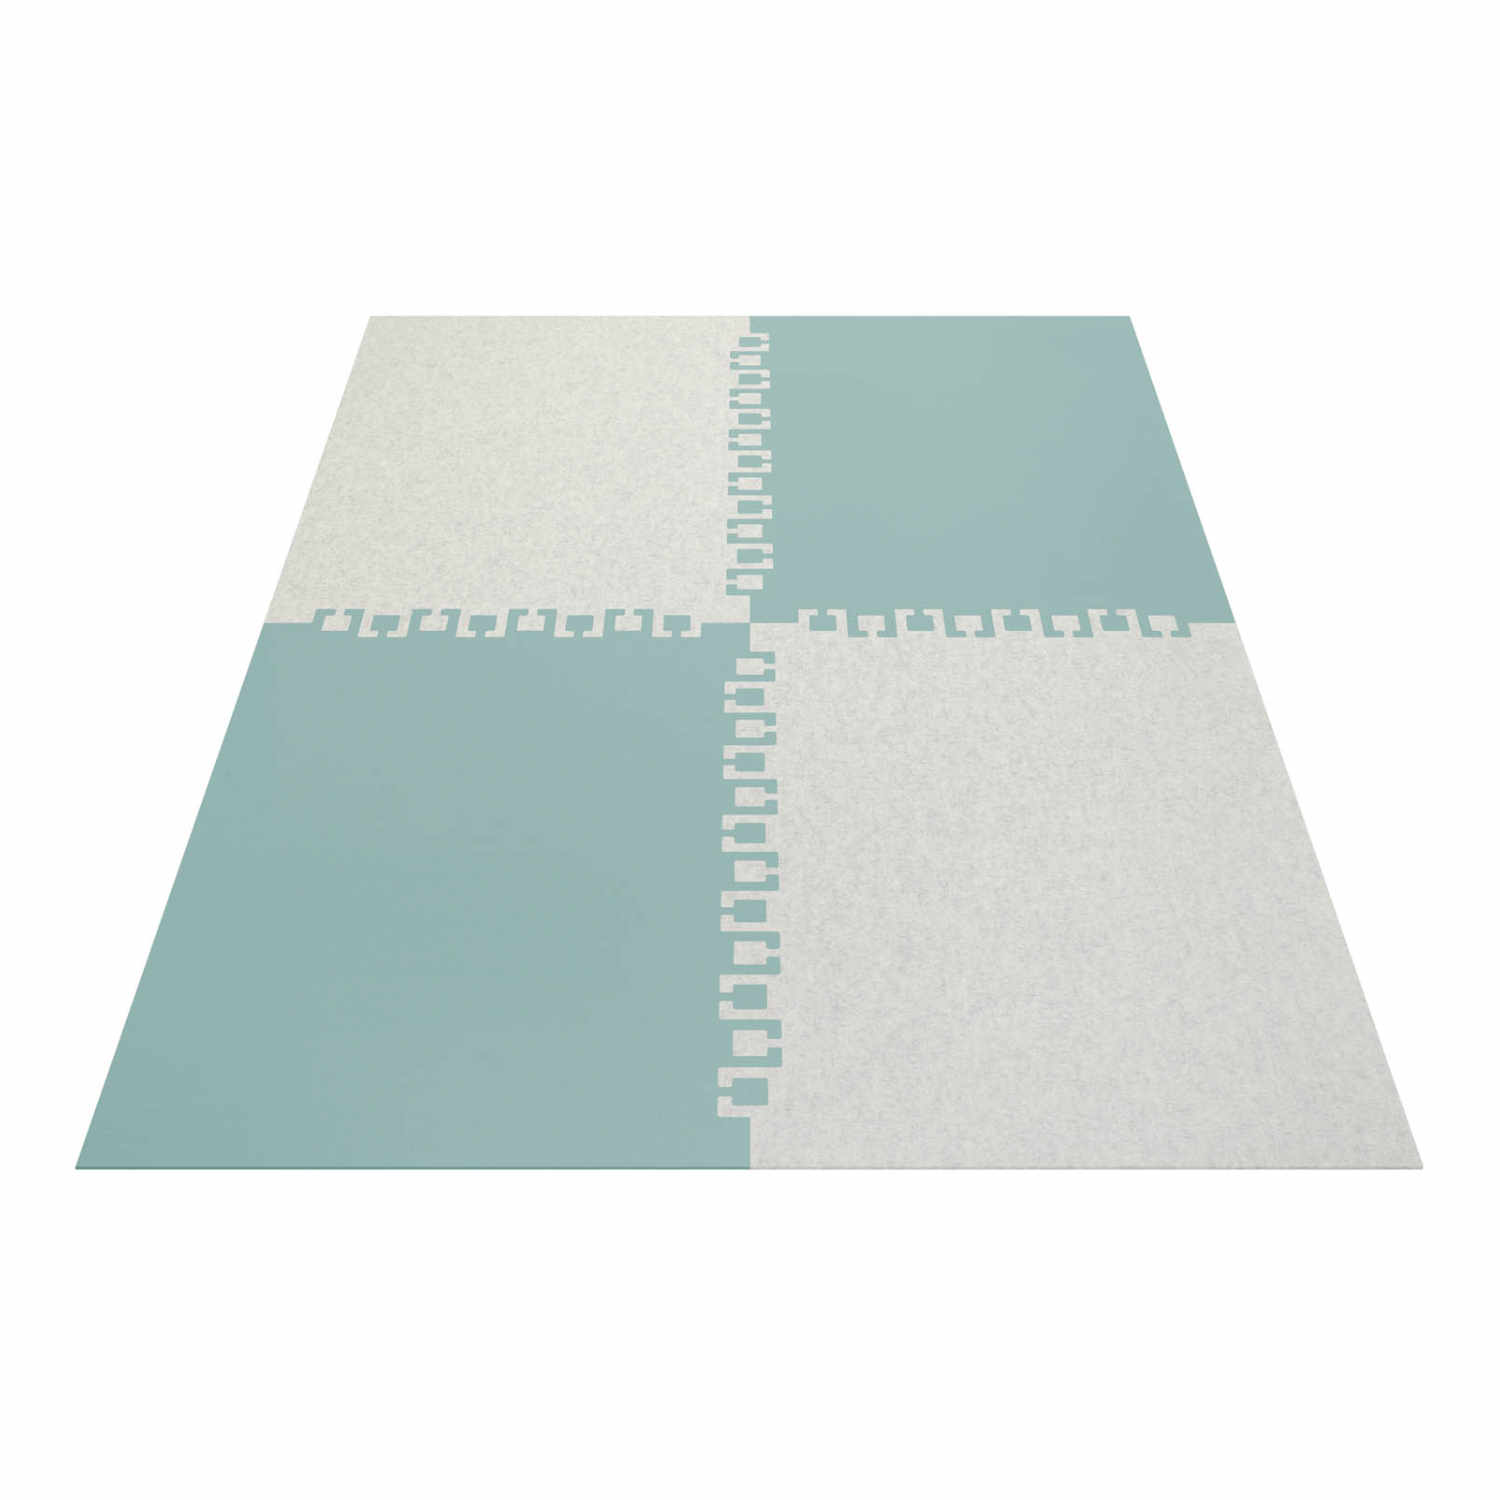 Twice rechteckig 4-teilig Teppich, Farbe wollweiss, Farbe 2 marmor 06, Grösse 140 x 200 cm von HEY-SIGN